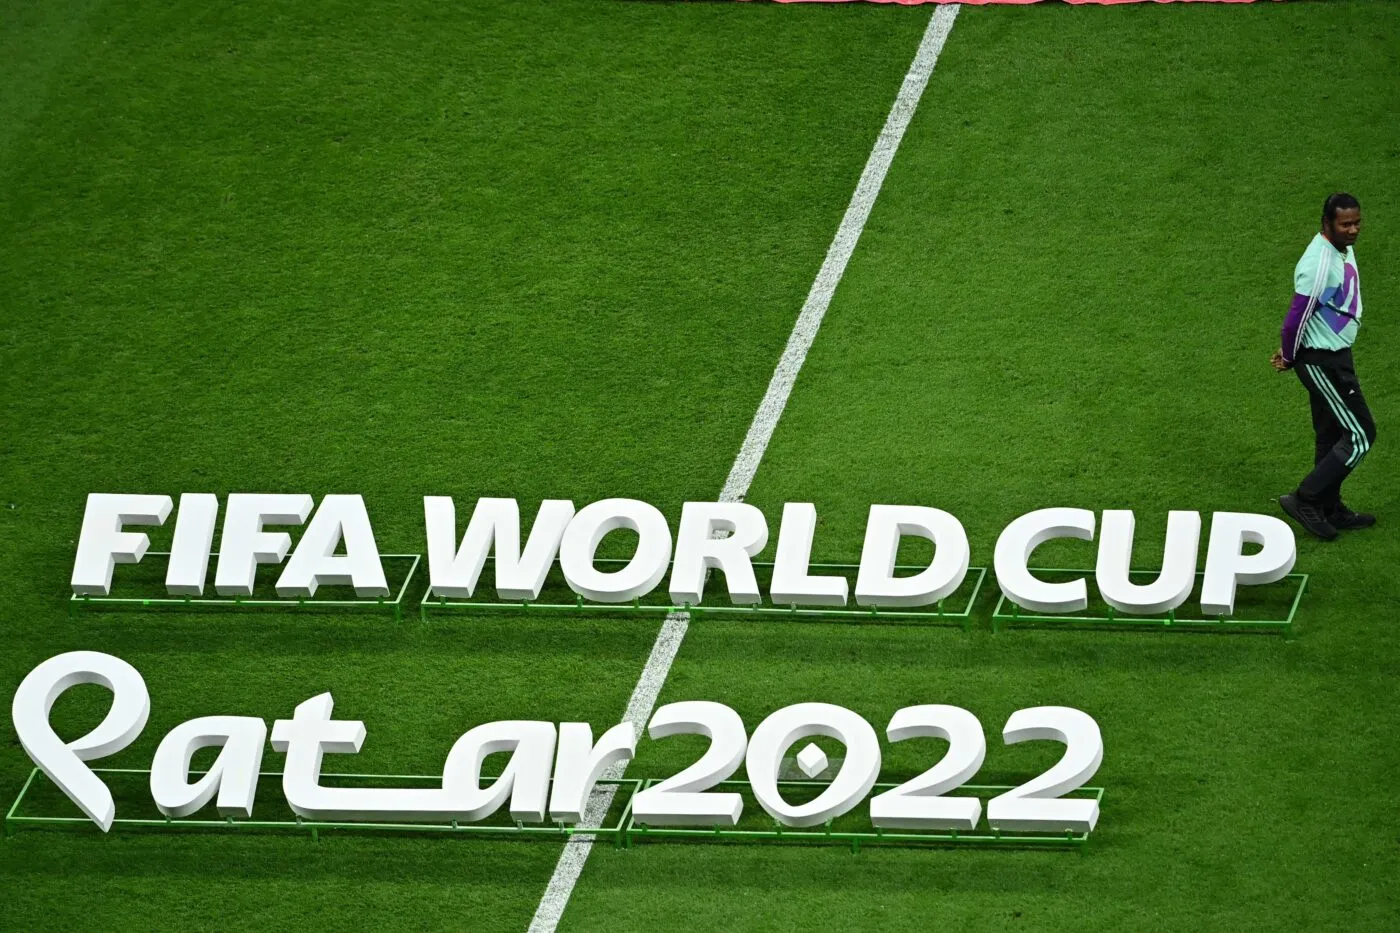 La Coupe du Monde 2030 sur 3 continents ou la fuite en avant de la